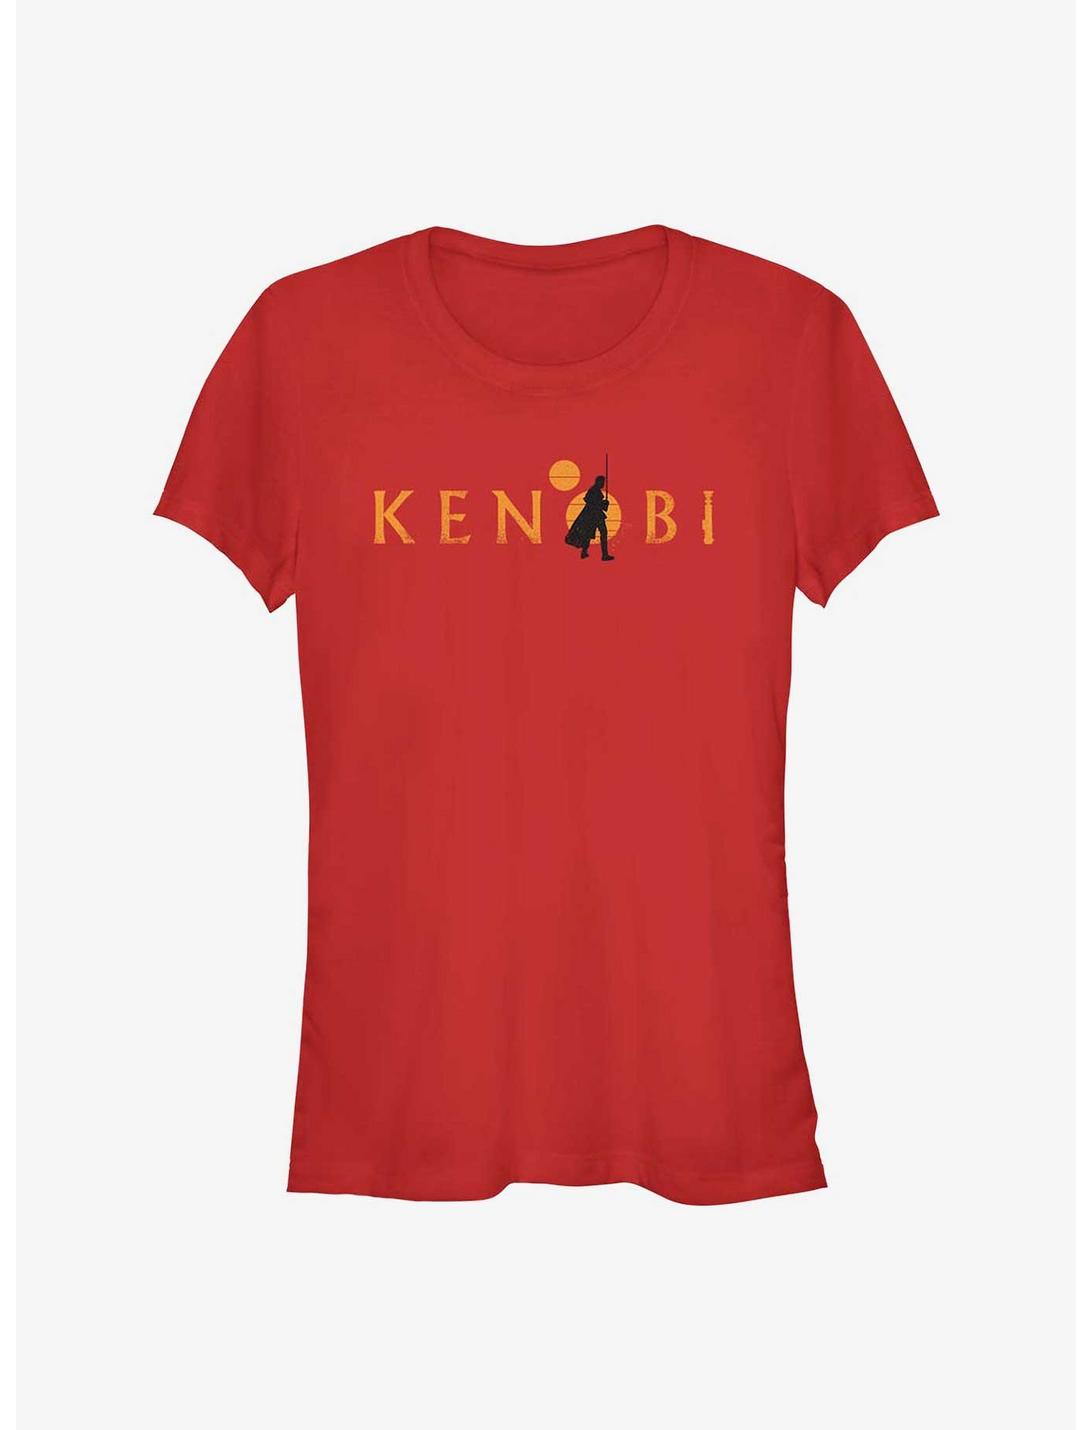 Star Wars Obi-Wan Kenobi Two Suns Logo Girls T-Shirt, RED, hi-res